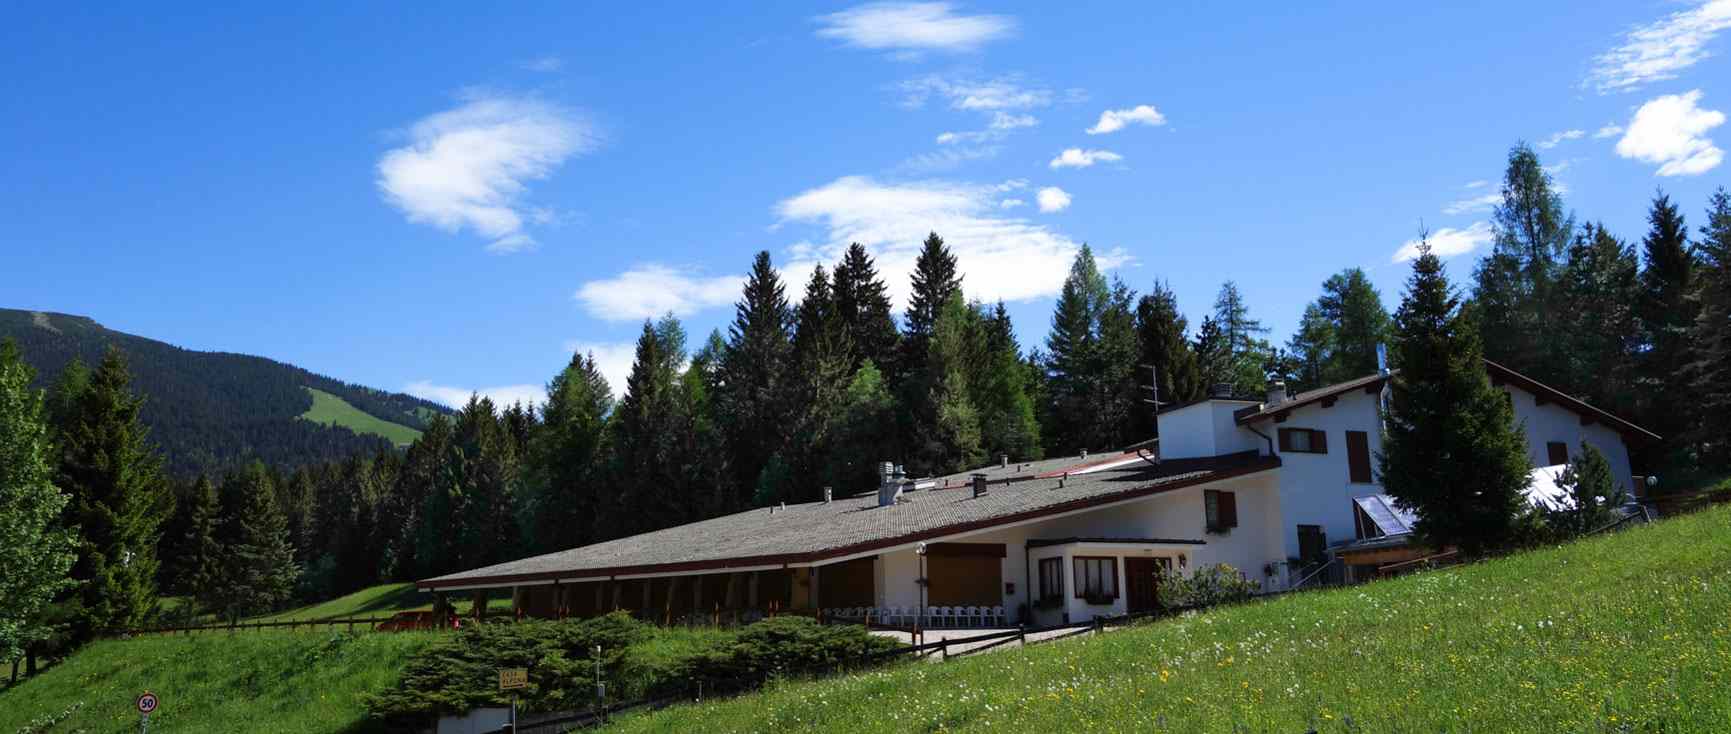 Albergo 2 stelle Casa Alpina a  Folgaria in località Francolini. Pensione completa, mezza pensione